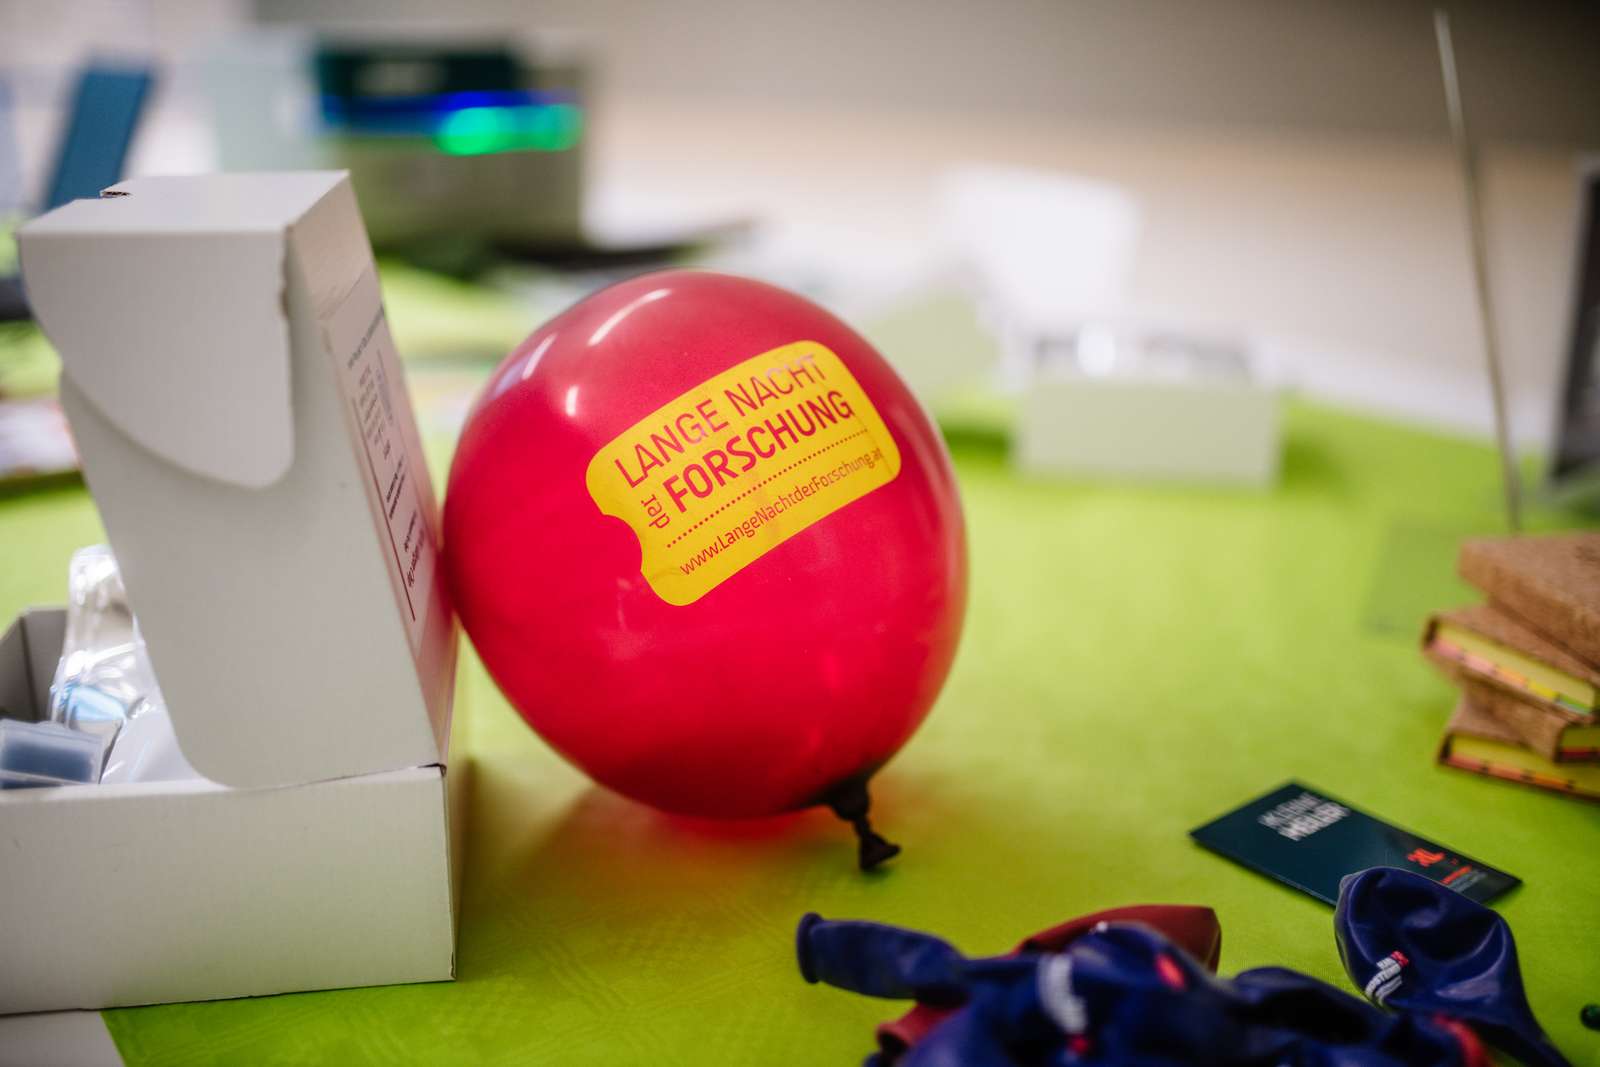 Lange Nacht der Forschung: Luftballon  mit Branding auf grünem Tisch